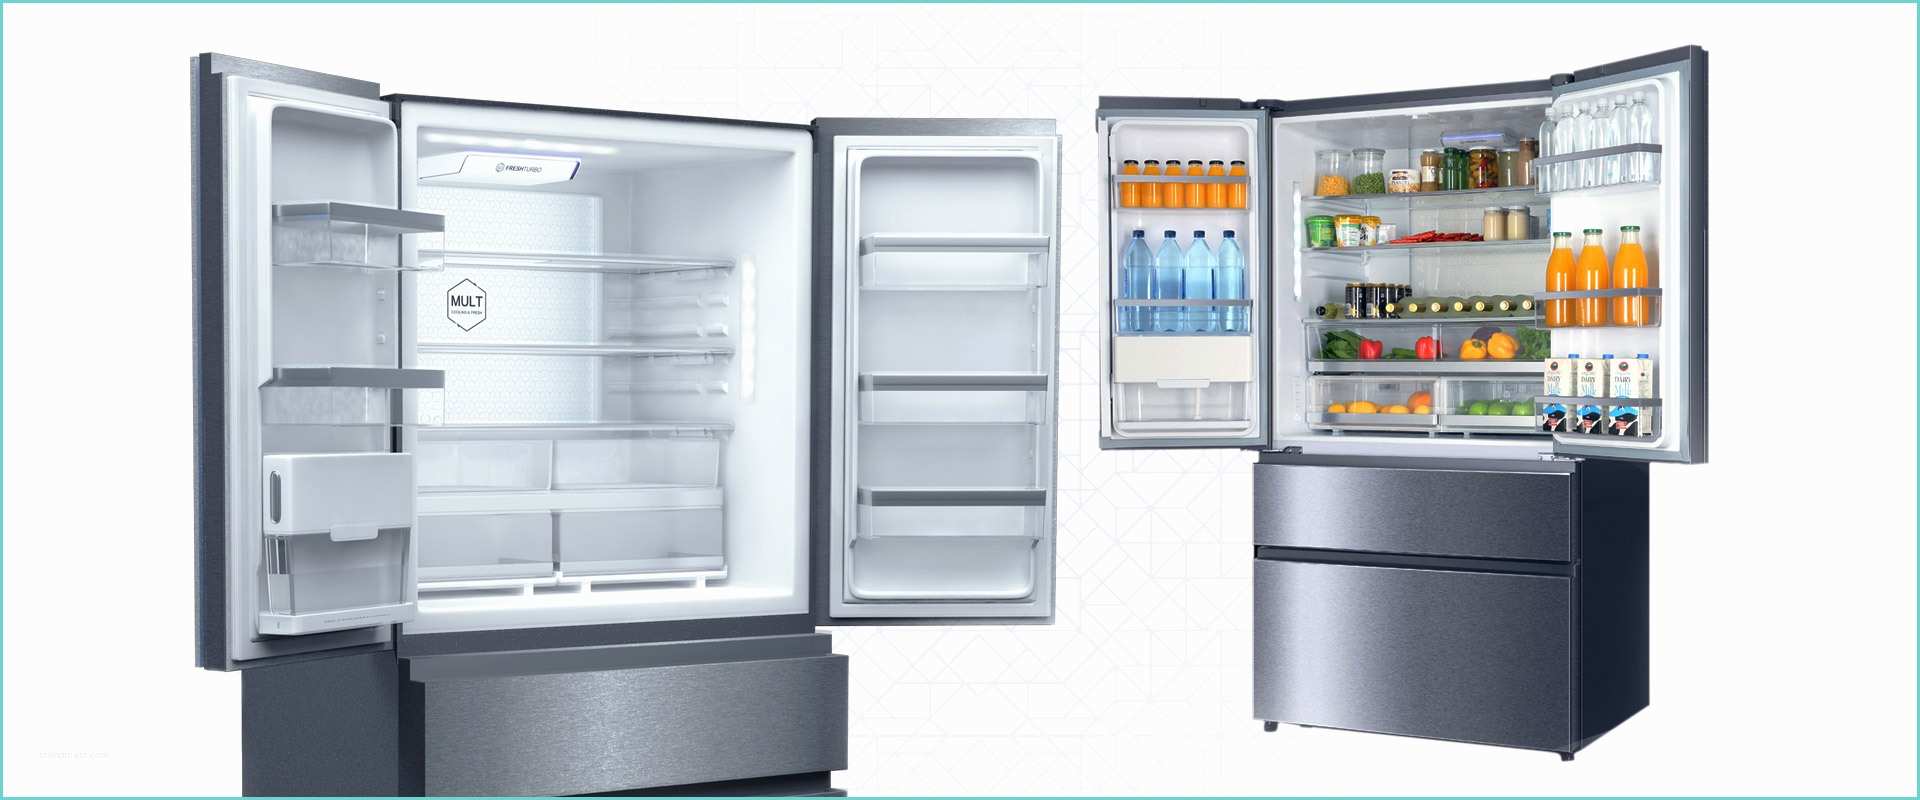 Refrigerateur Grande Largeur 90 Cm Refrigerateur Grande Capacité Choix D électroménager